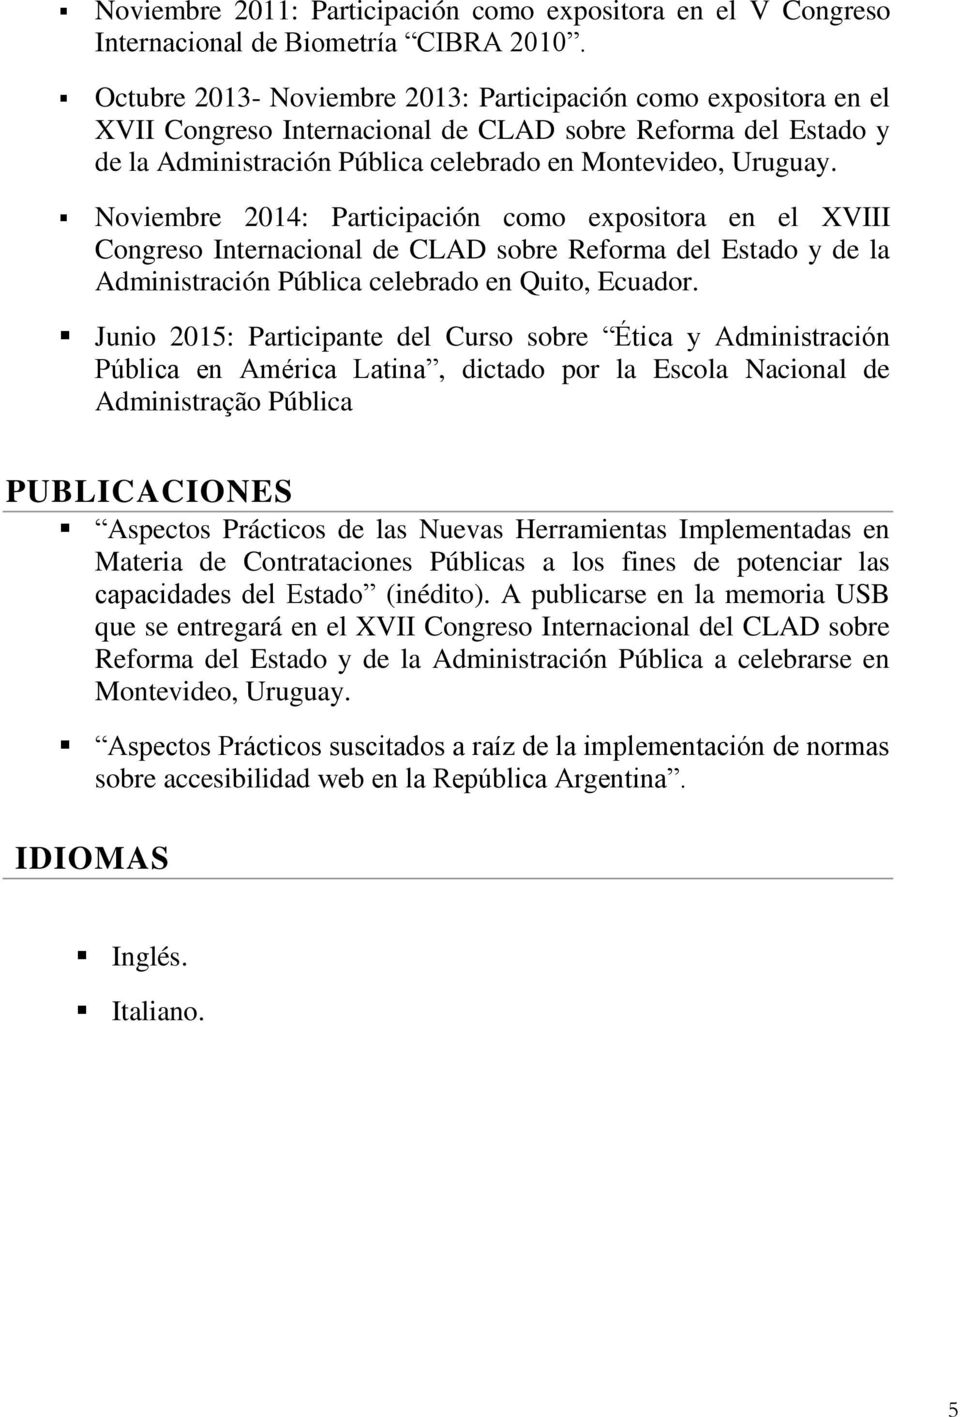 Noviembre 2014: Participación como expositora en el XVIII Congreso Internacional de CLAD sobre Reforma del Estado y de la Administración Pública celebrado en Quito, Ecuador.